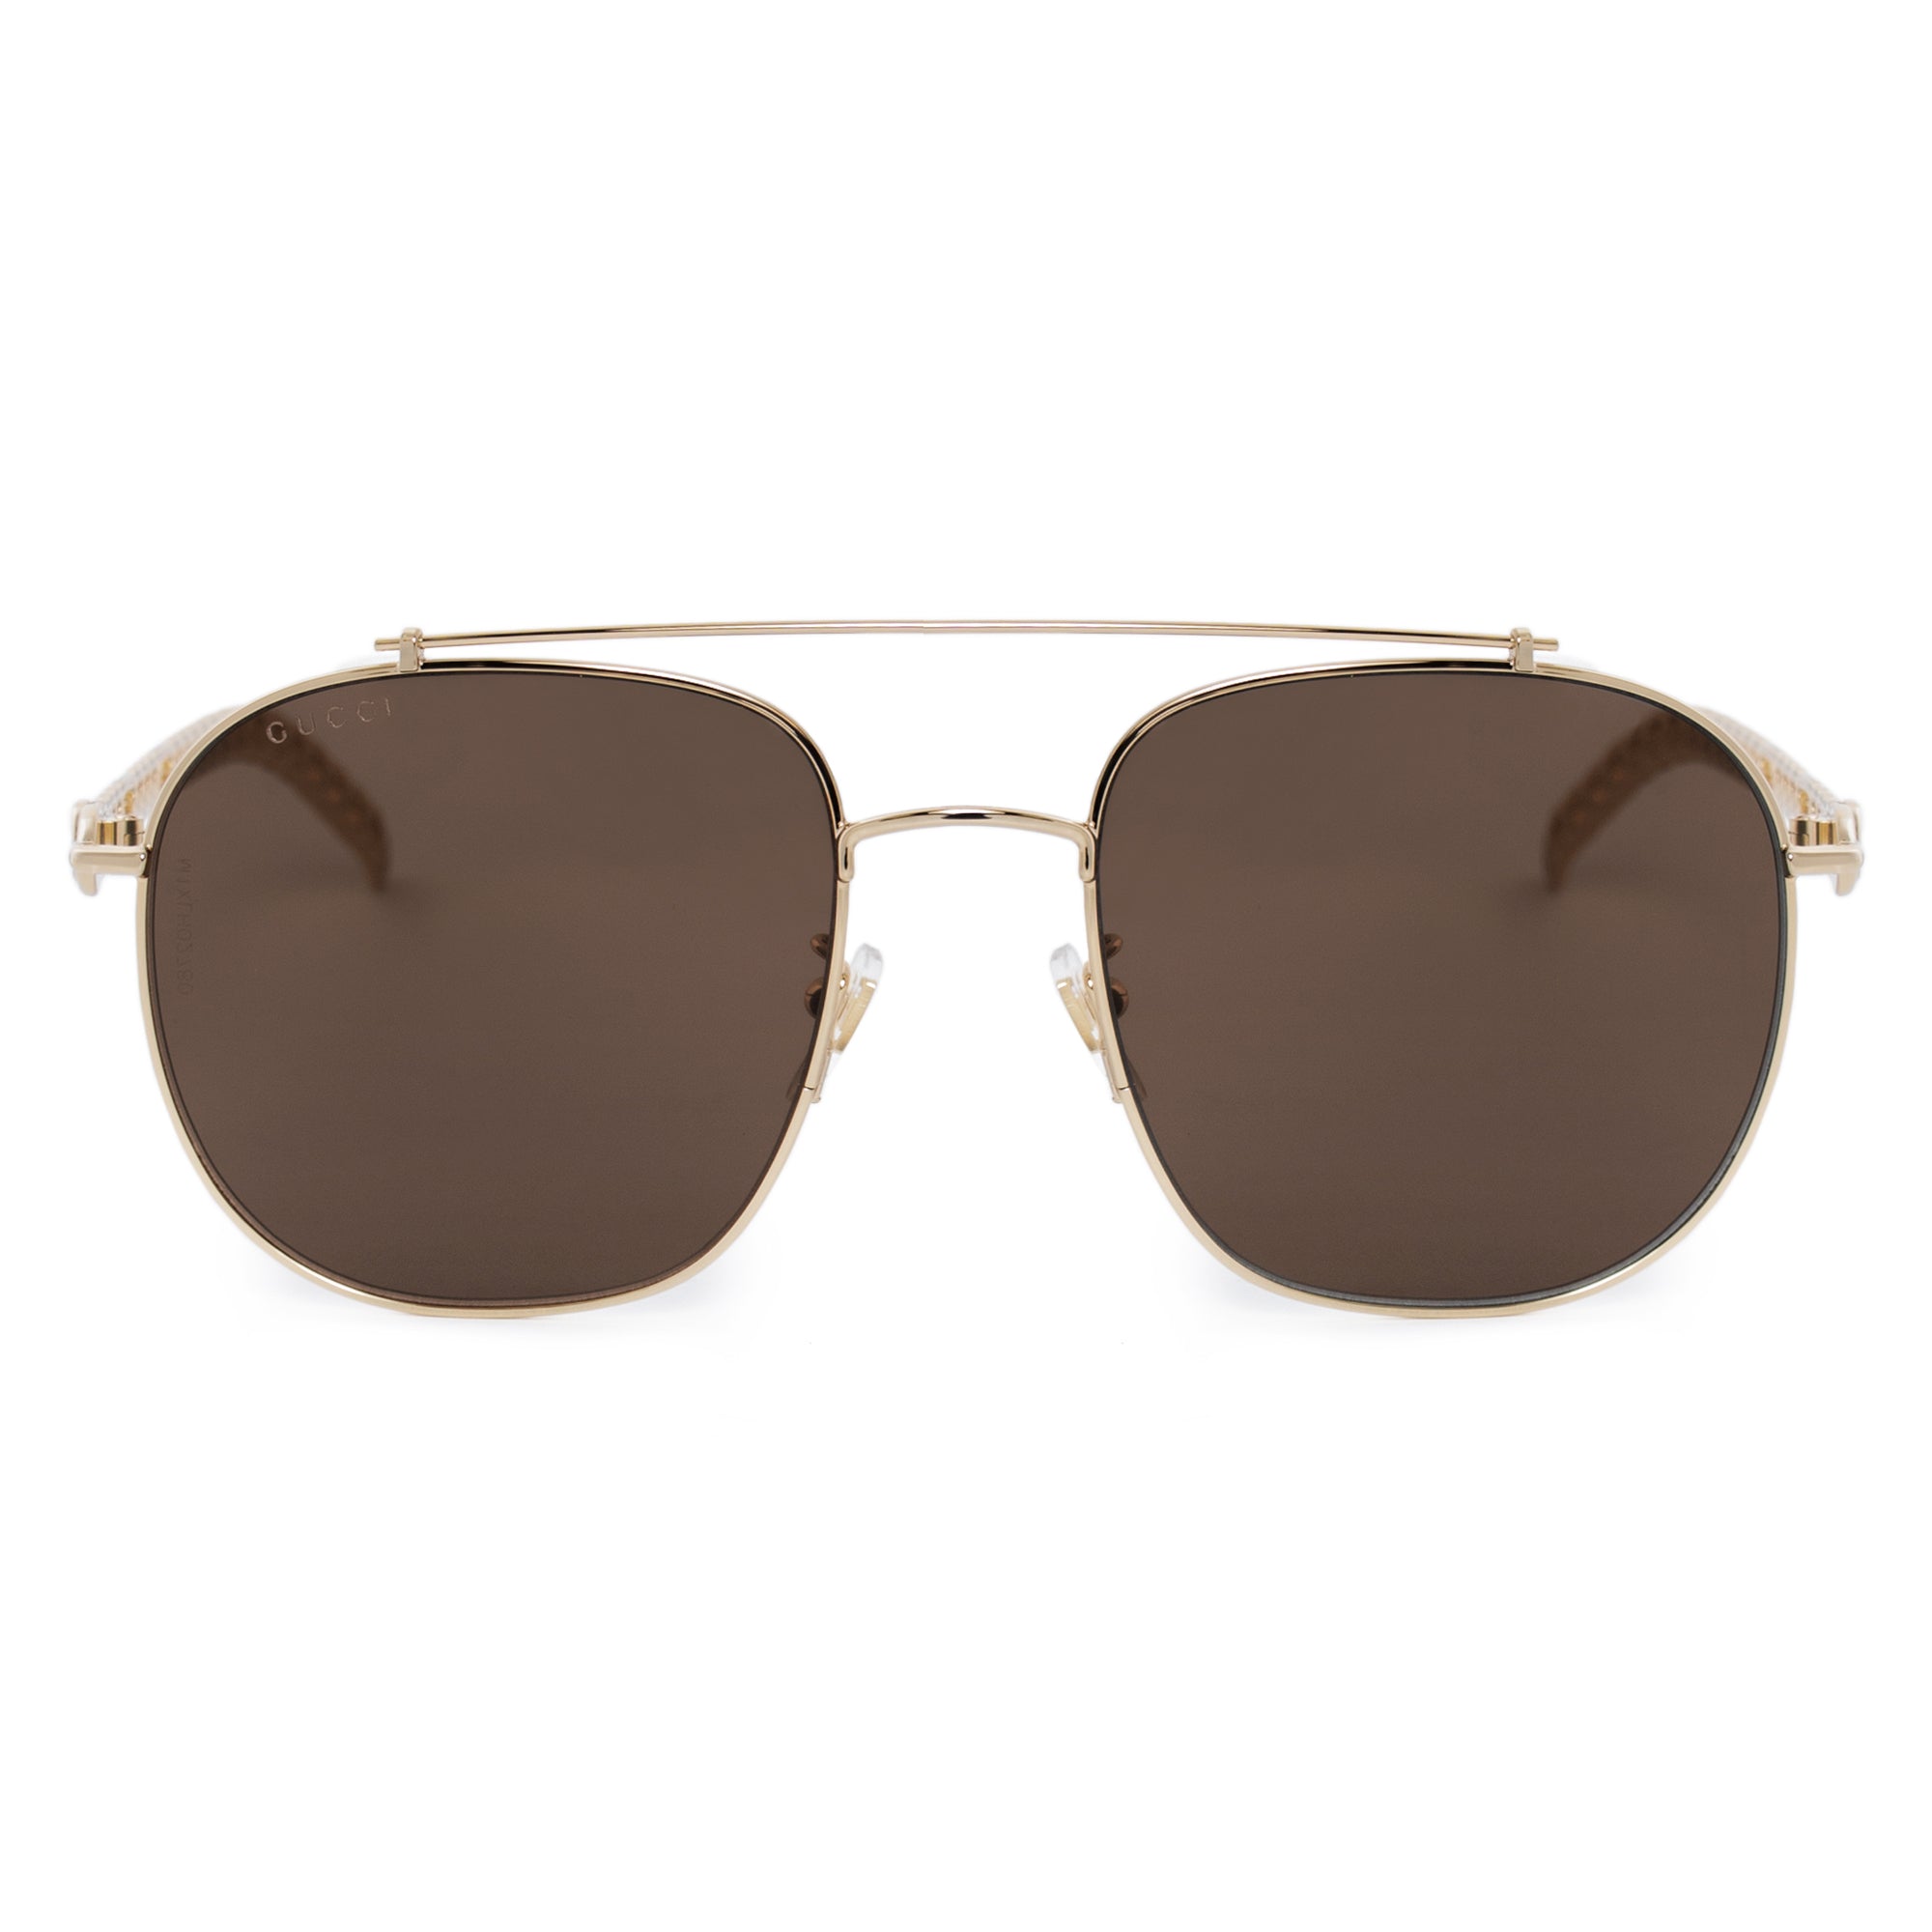 Gucci Aviator Sunglasses GG0725S 002 61